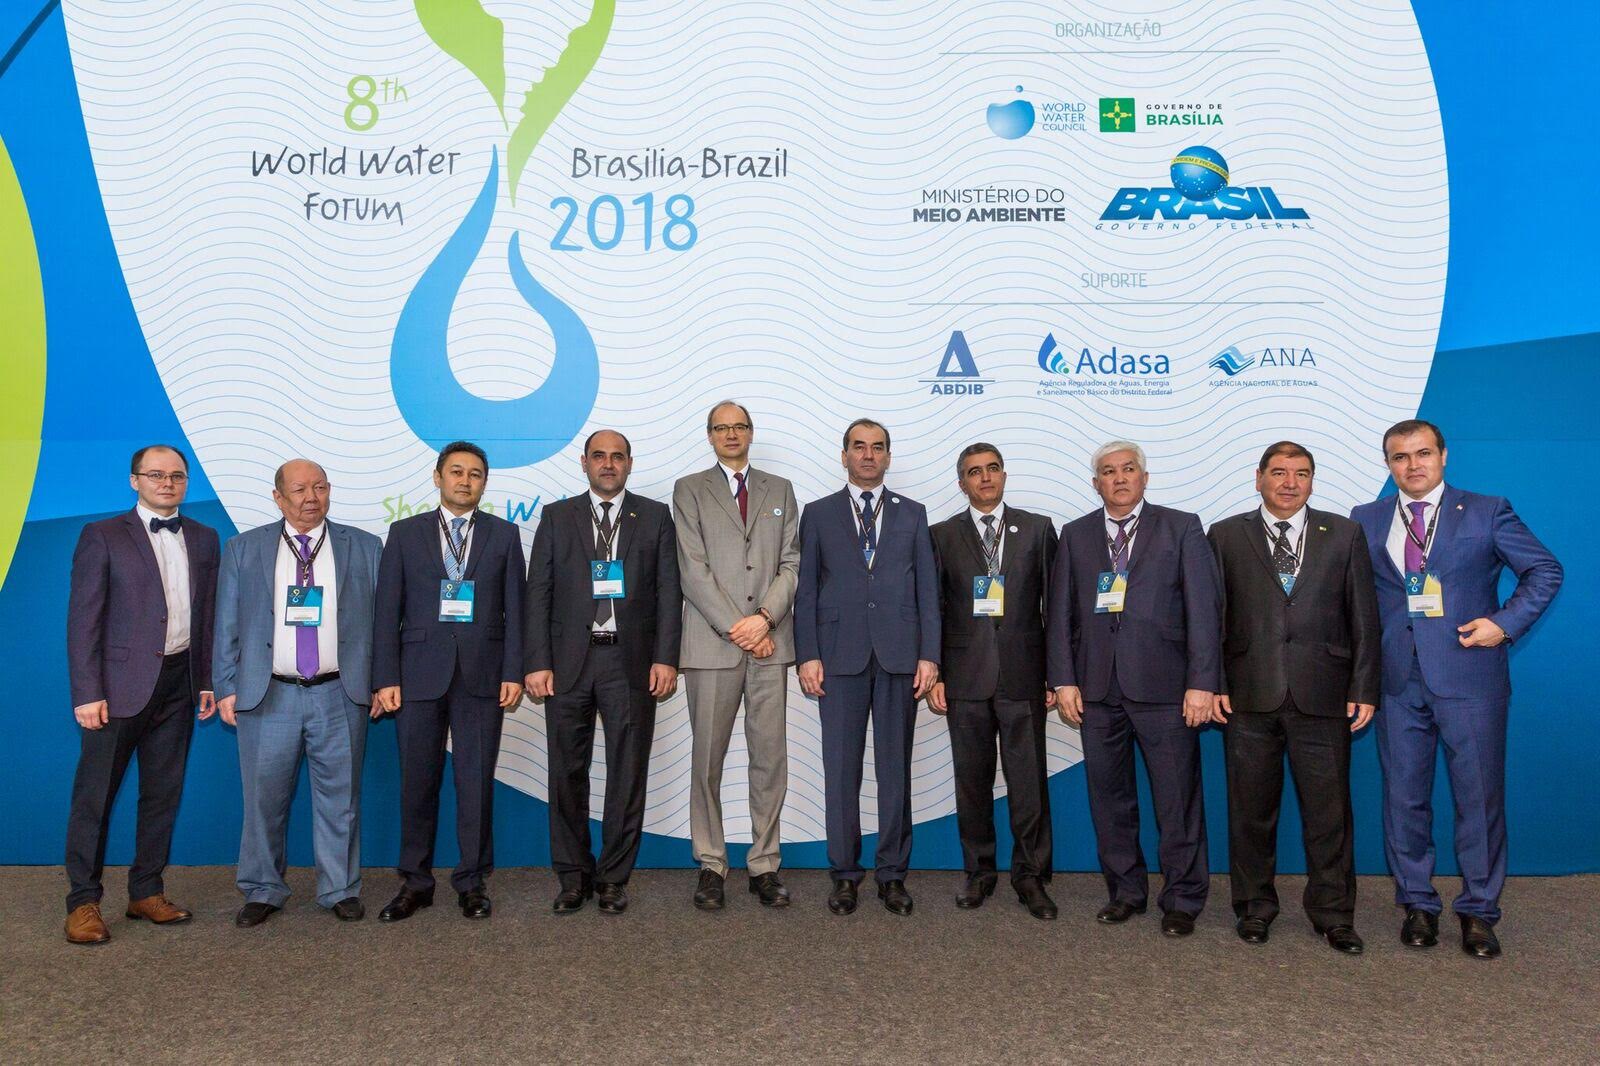 Трансграничное водное сотрудничество в Центральной Азии представили на 8-м Всемирном водном форуме